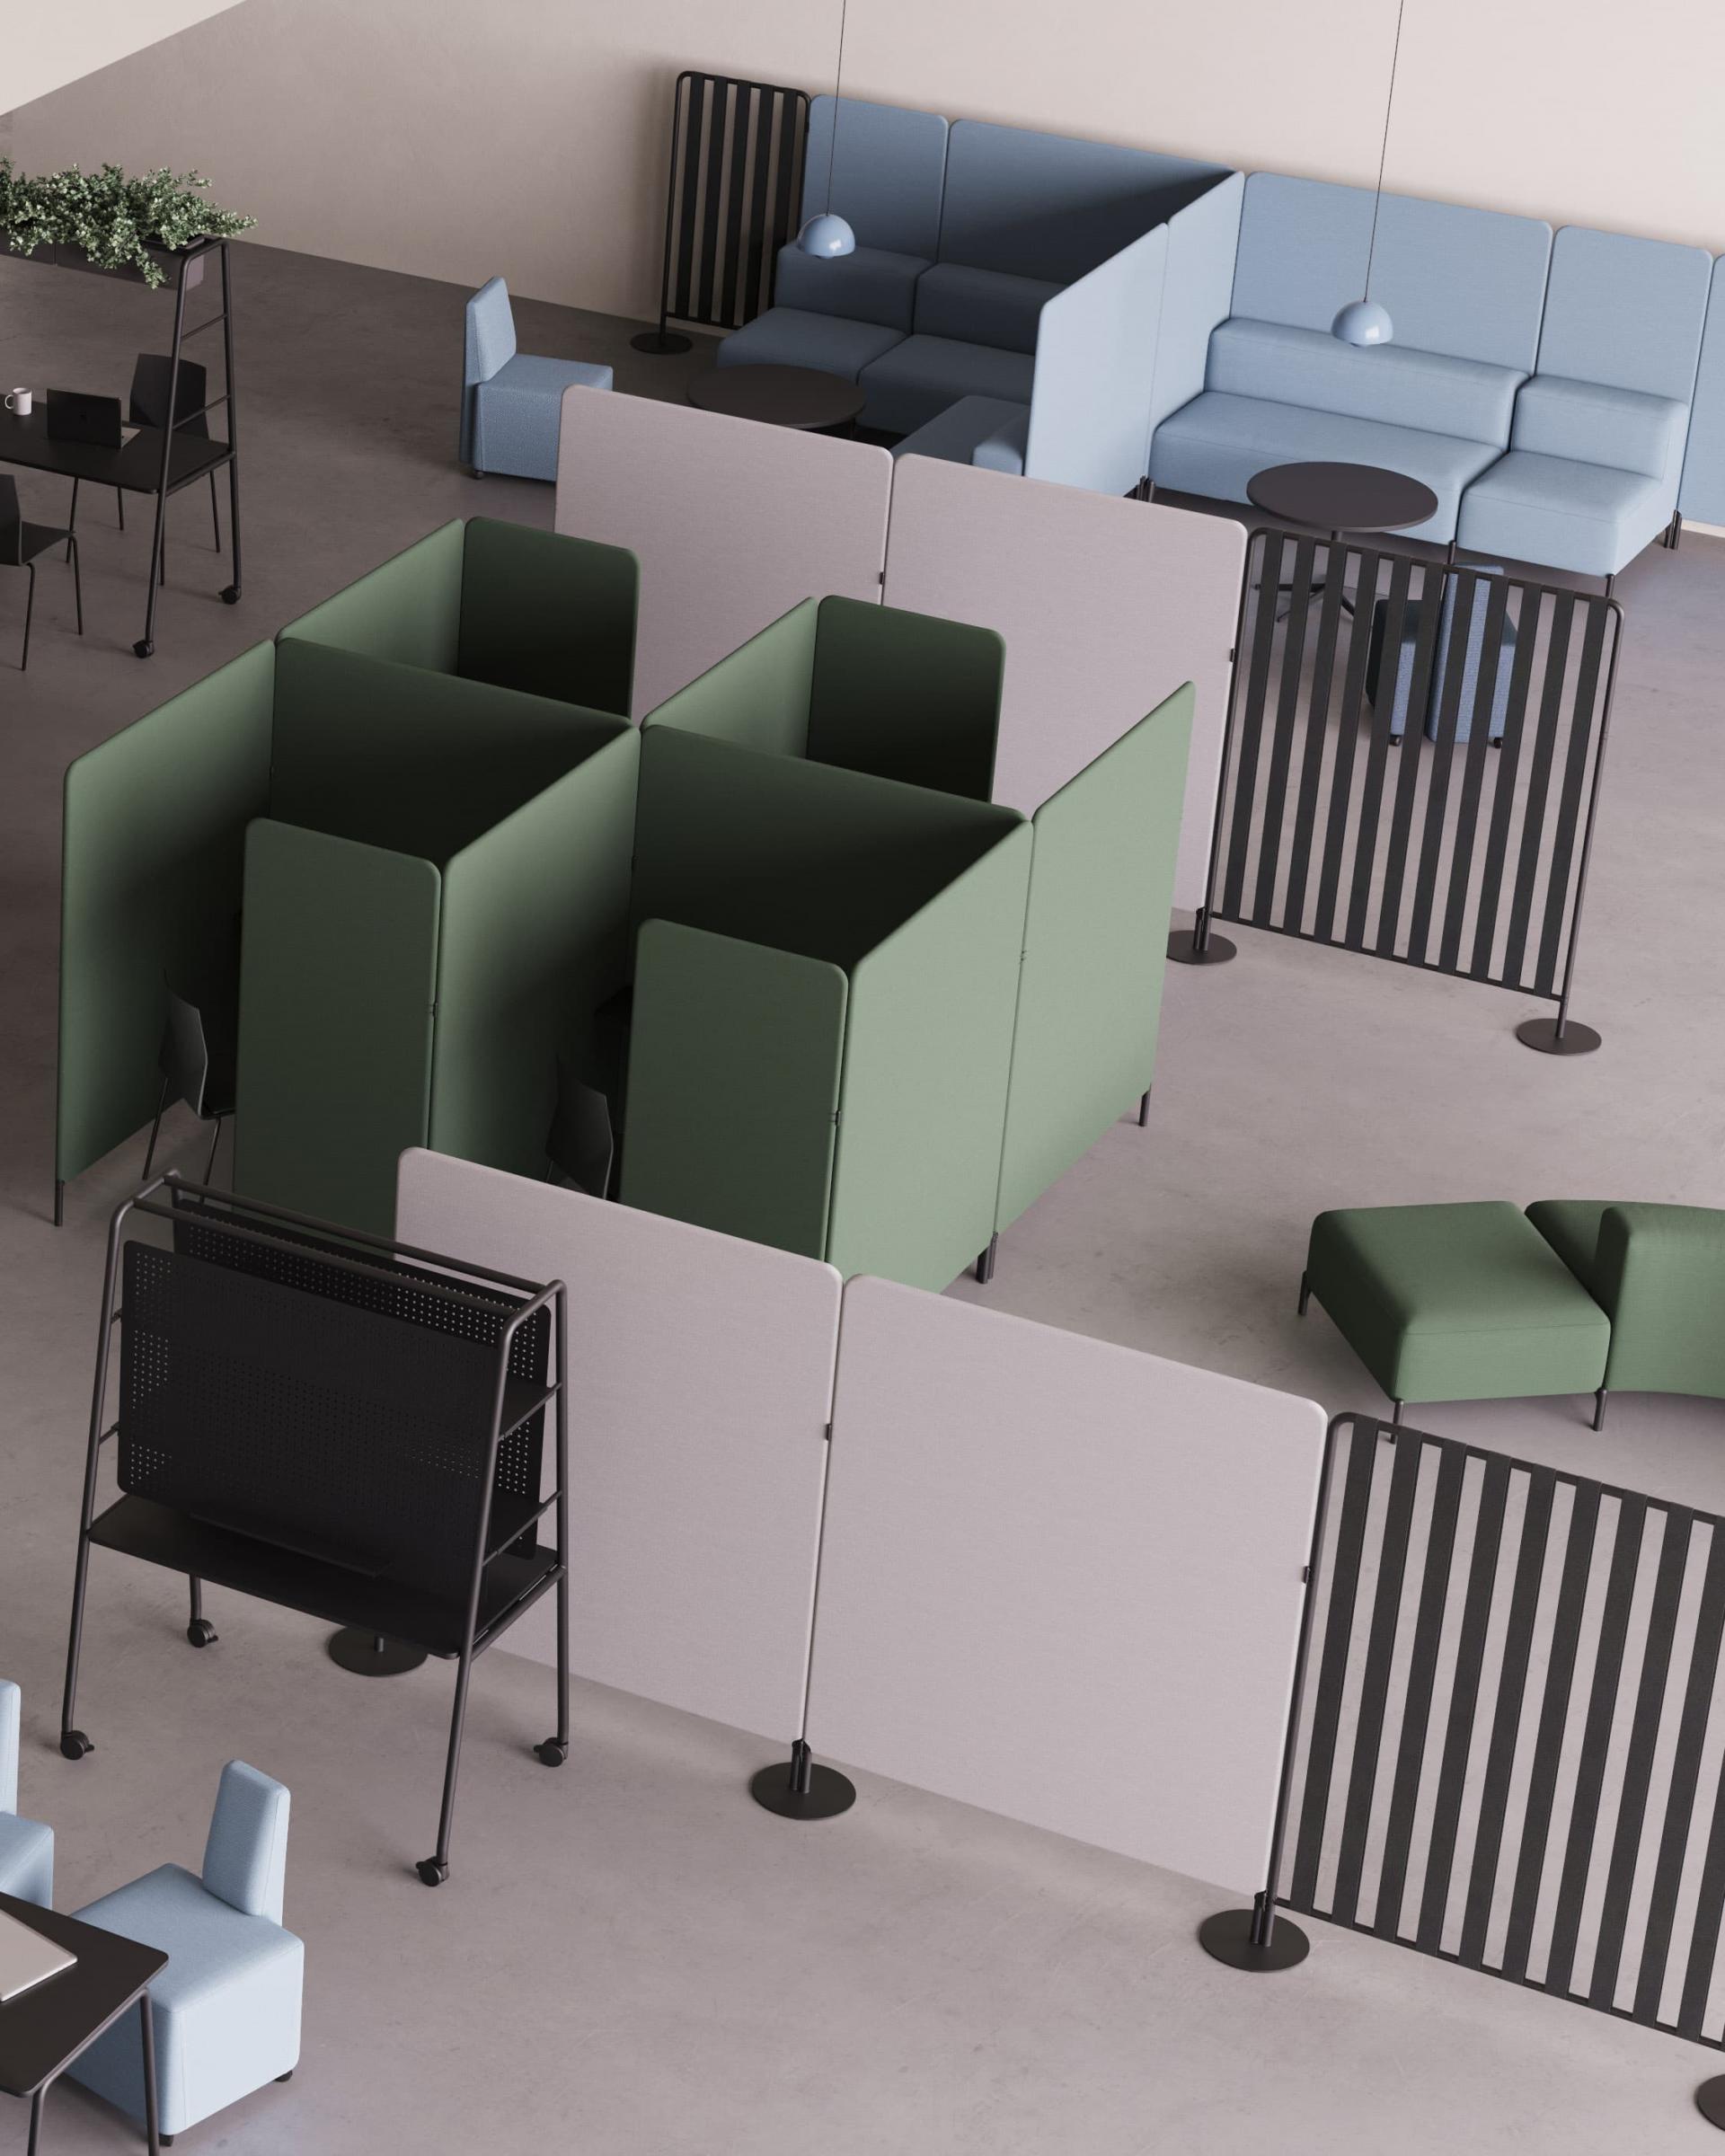 Gemeinschaftlich Benutzer Raum mit Möbel von FourDesign. Die Arbeitsplätze sind flexibel gestaltet und können verschoben und angepasst werden.